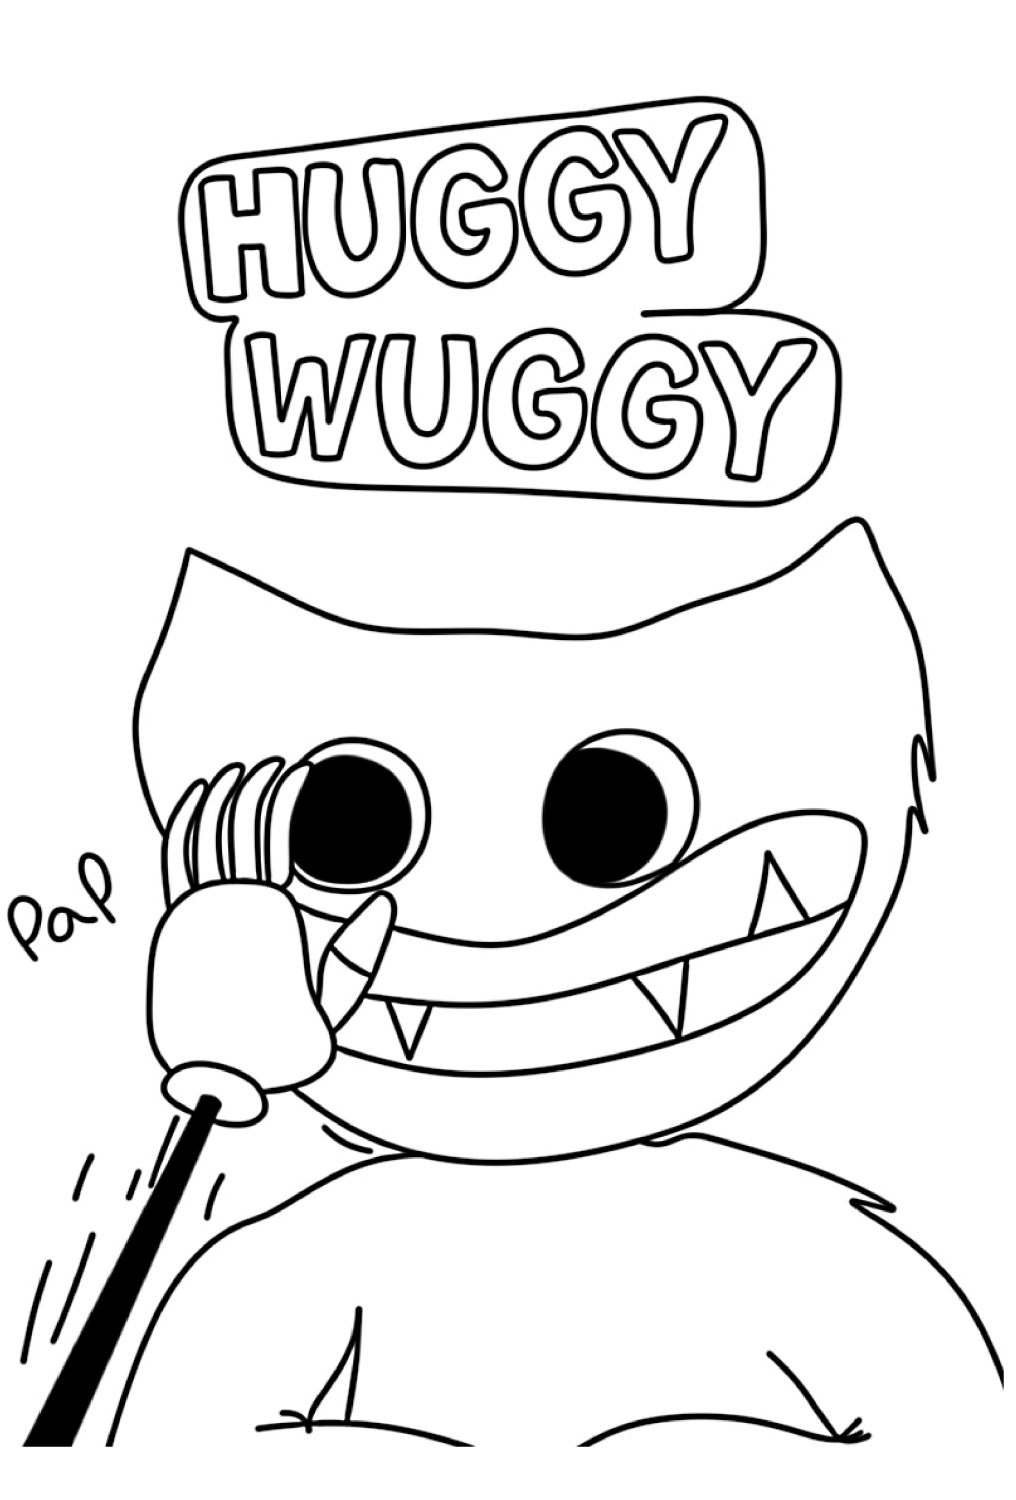 Dibujo 29 de Huggy Wuggy para imprimir y colorear